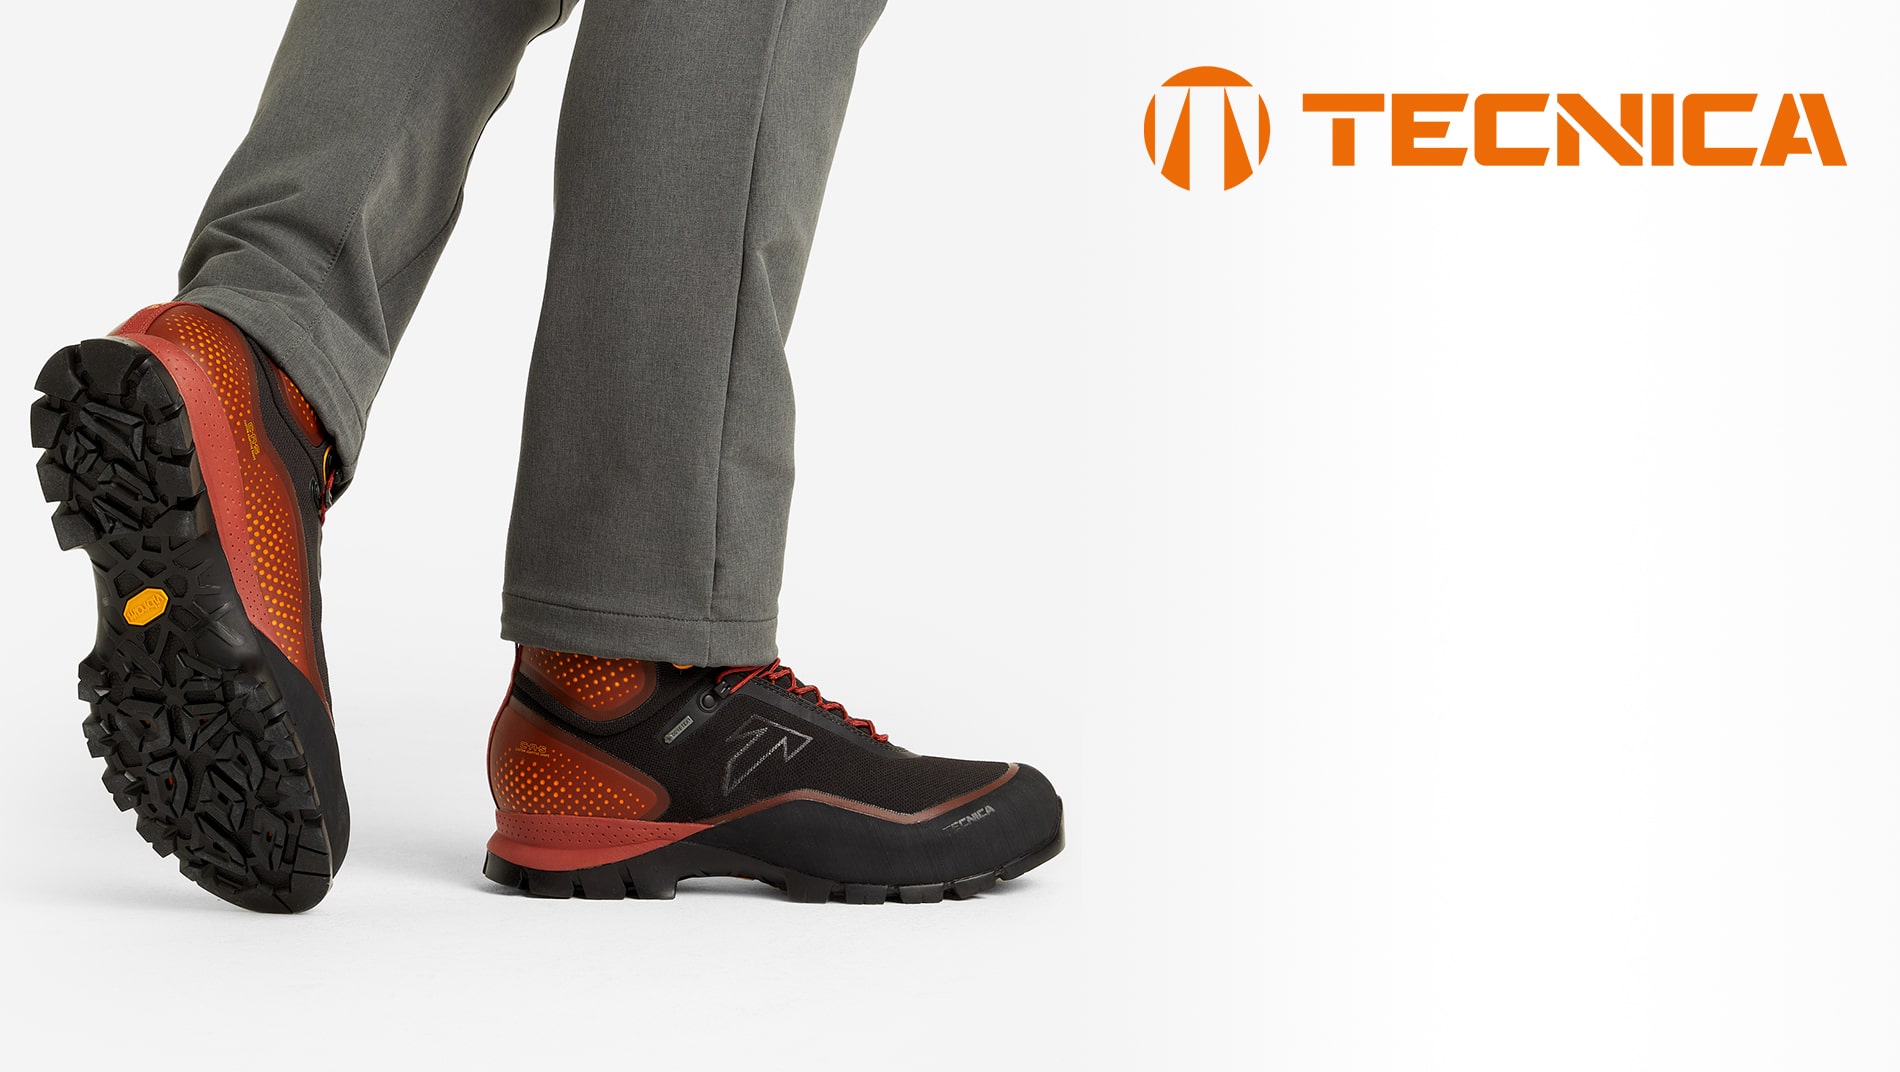 Ботинки мужские Tecnica Forge S GTX MS 012 черный/оранжевый цвет — купитьза 12999 руб. со скидкой 50 %, отзывы в интернет-магазине Спортмастер